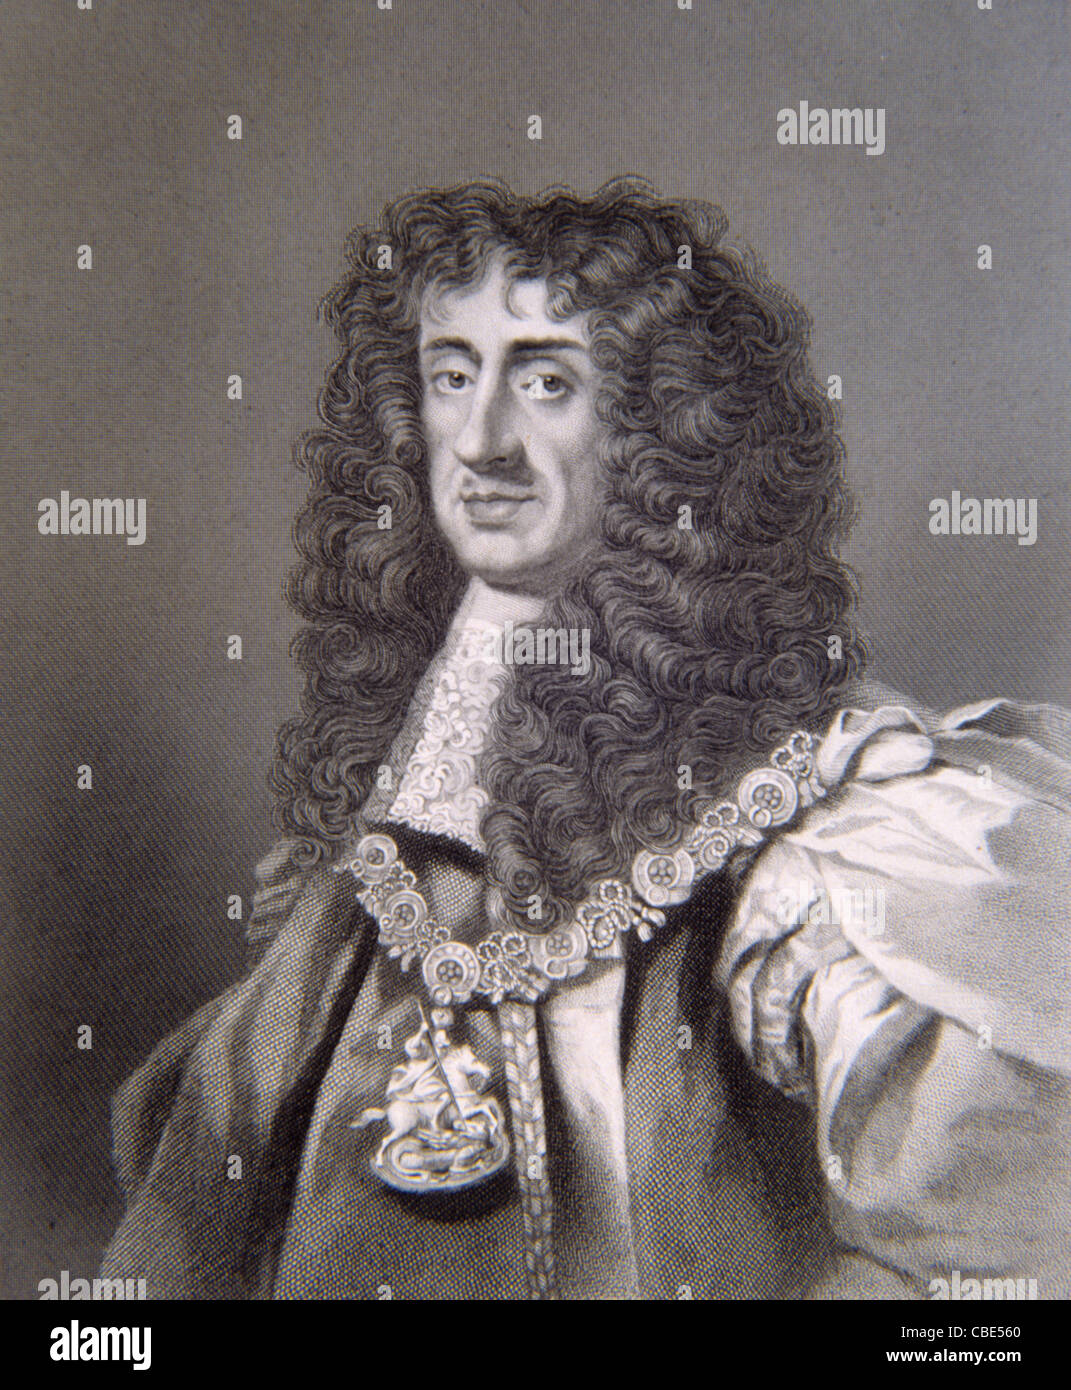 Porträt Karls II. Von England (1630-1685) König von England, Schottland und Irland (1660-1685) Porträt c19th Gravur oder Vintage Illustration Stockfoto